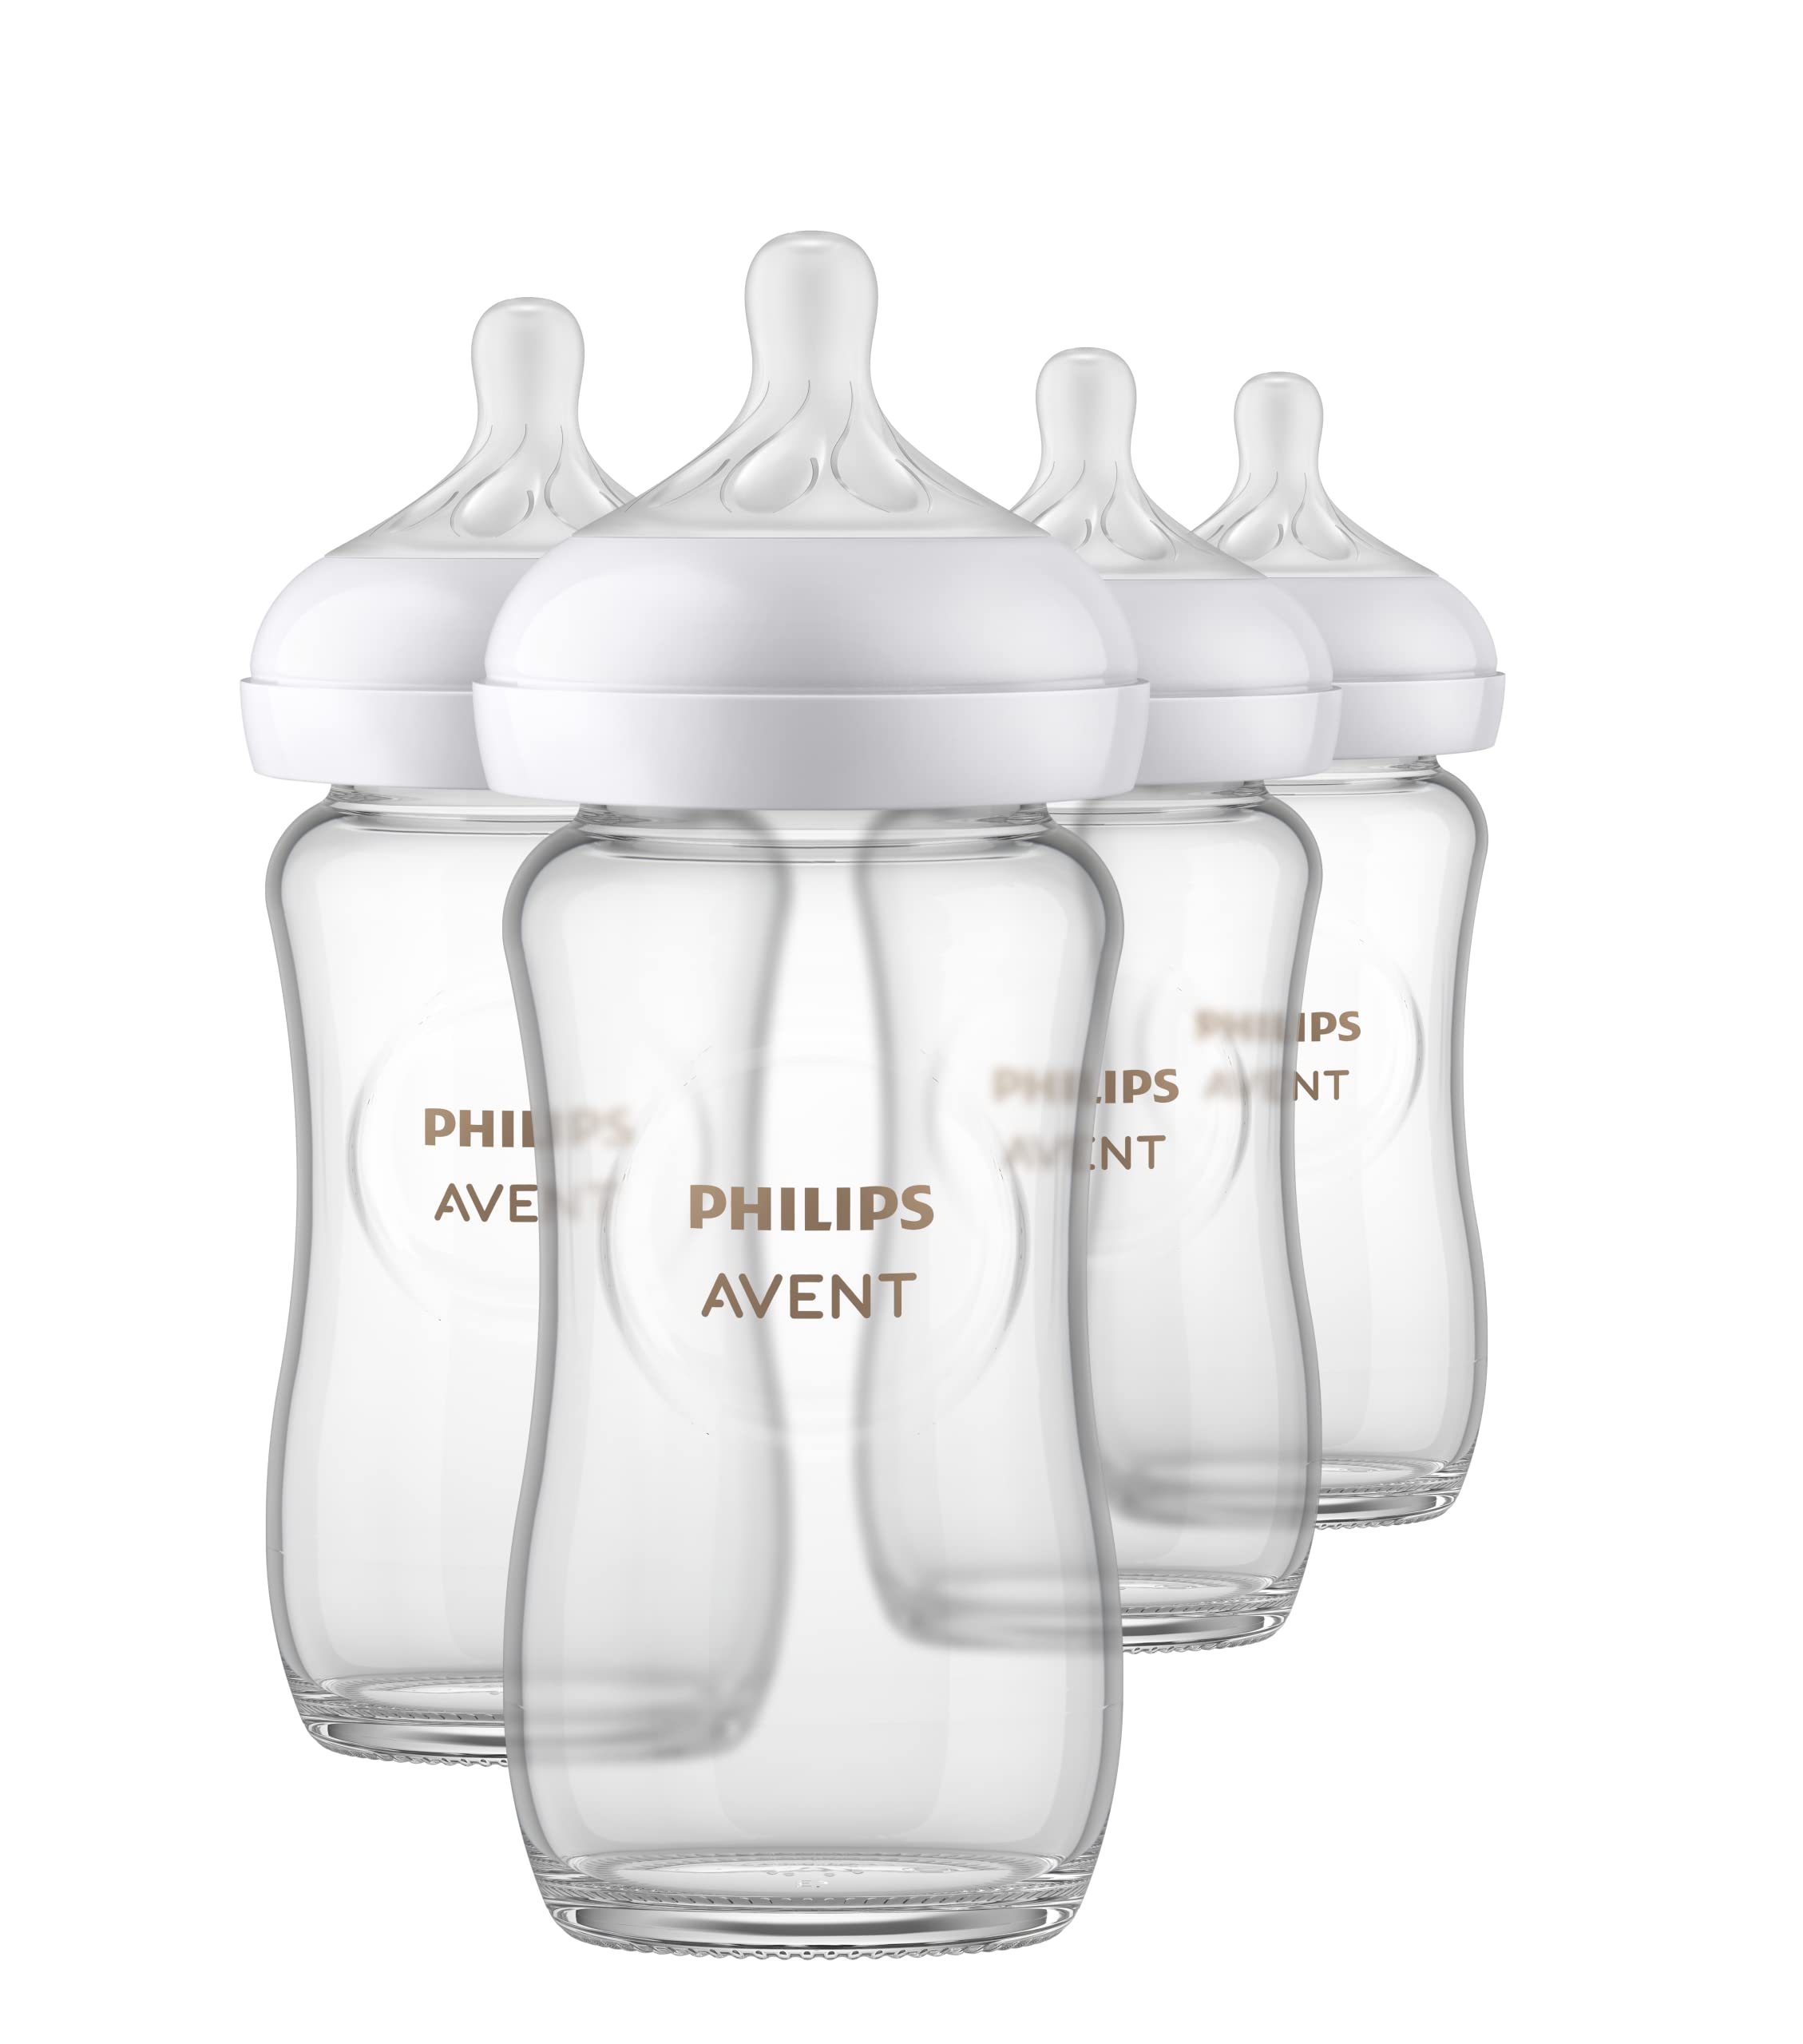 Buy Philips Avent Natural Response Newborn Gift Set · Turkey